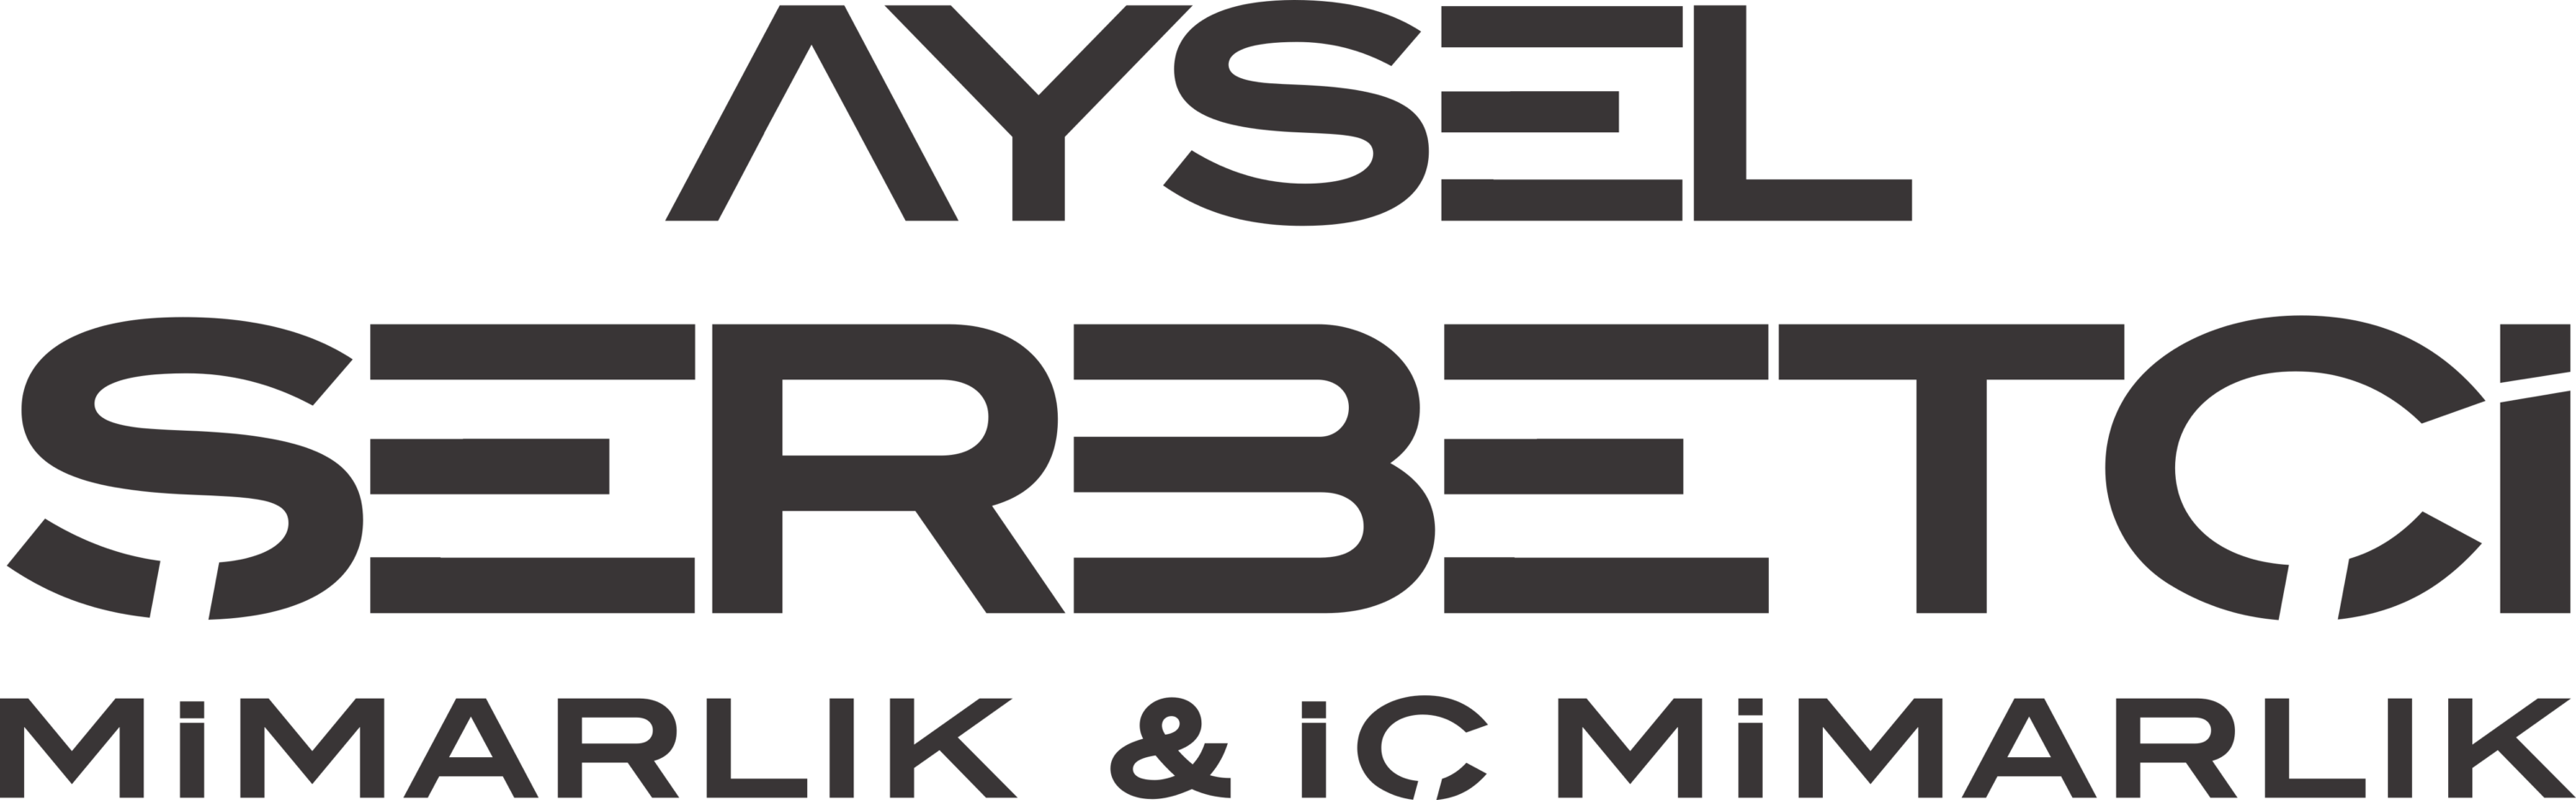 Aysel Serbetci Mimarlik Logo